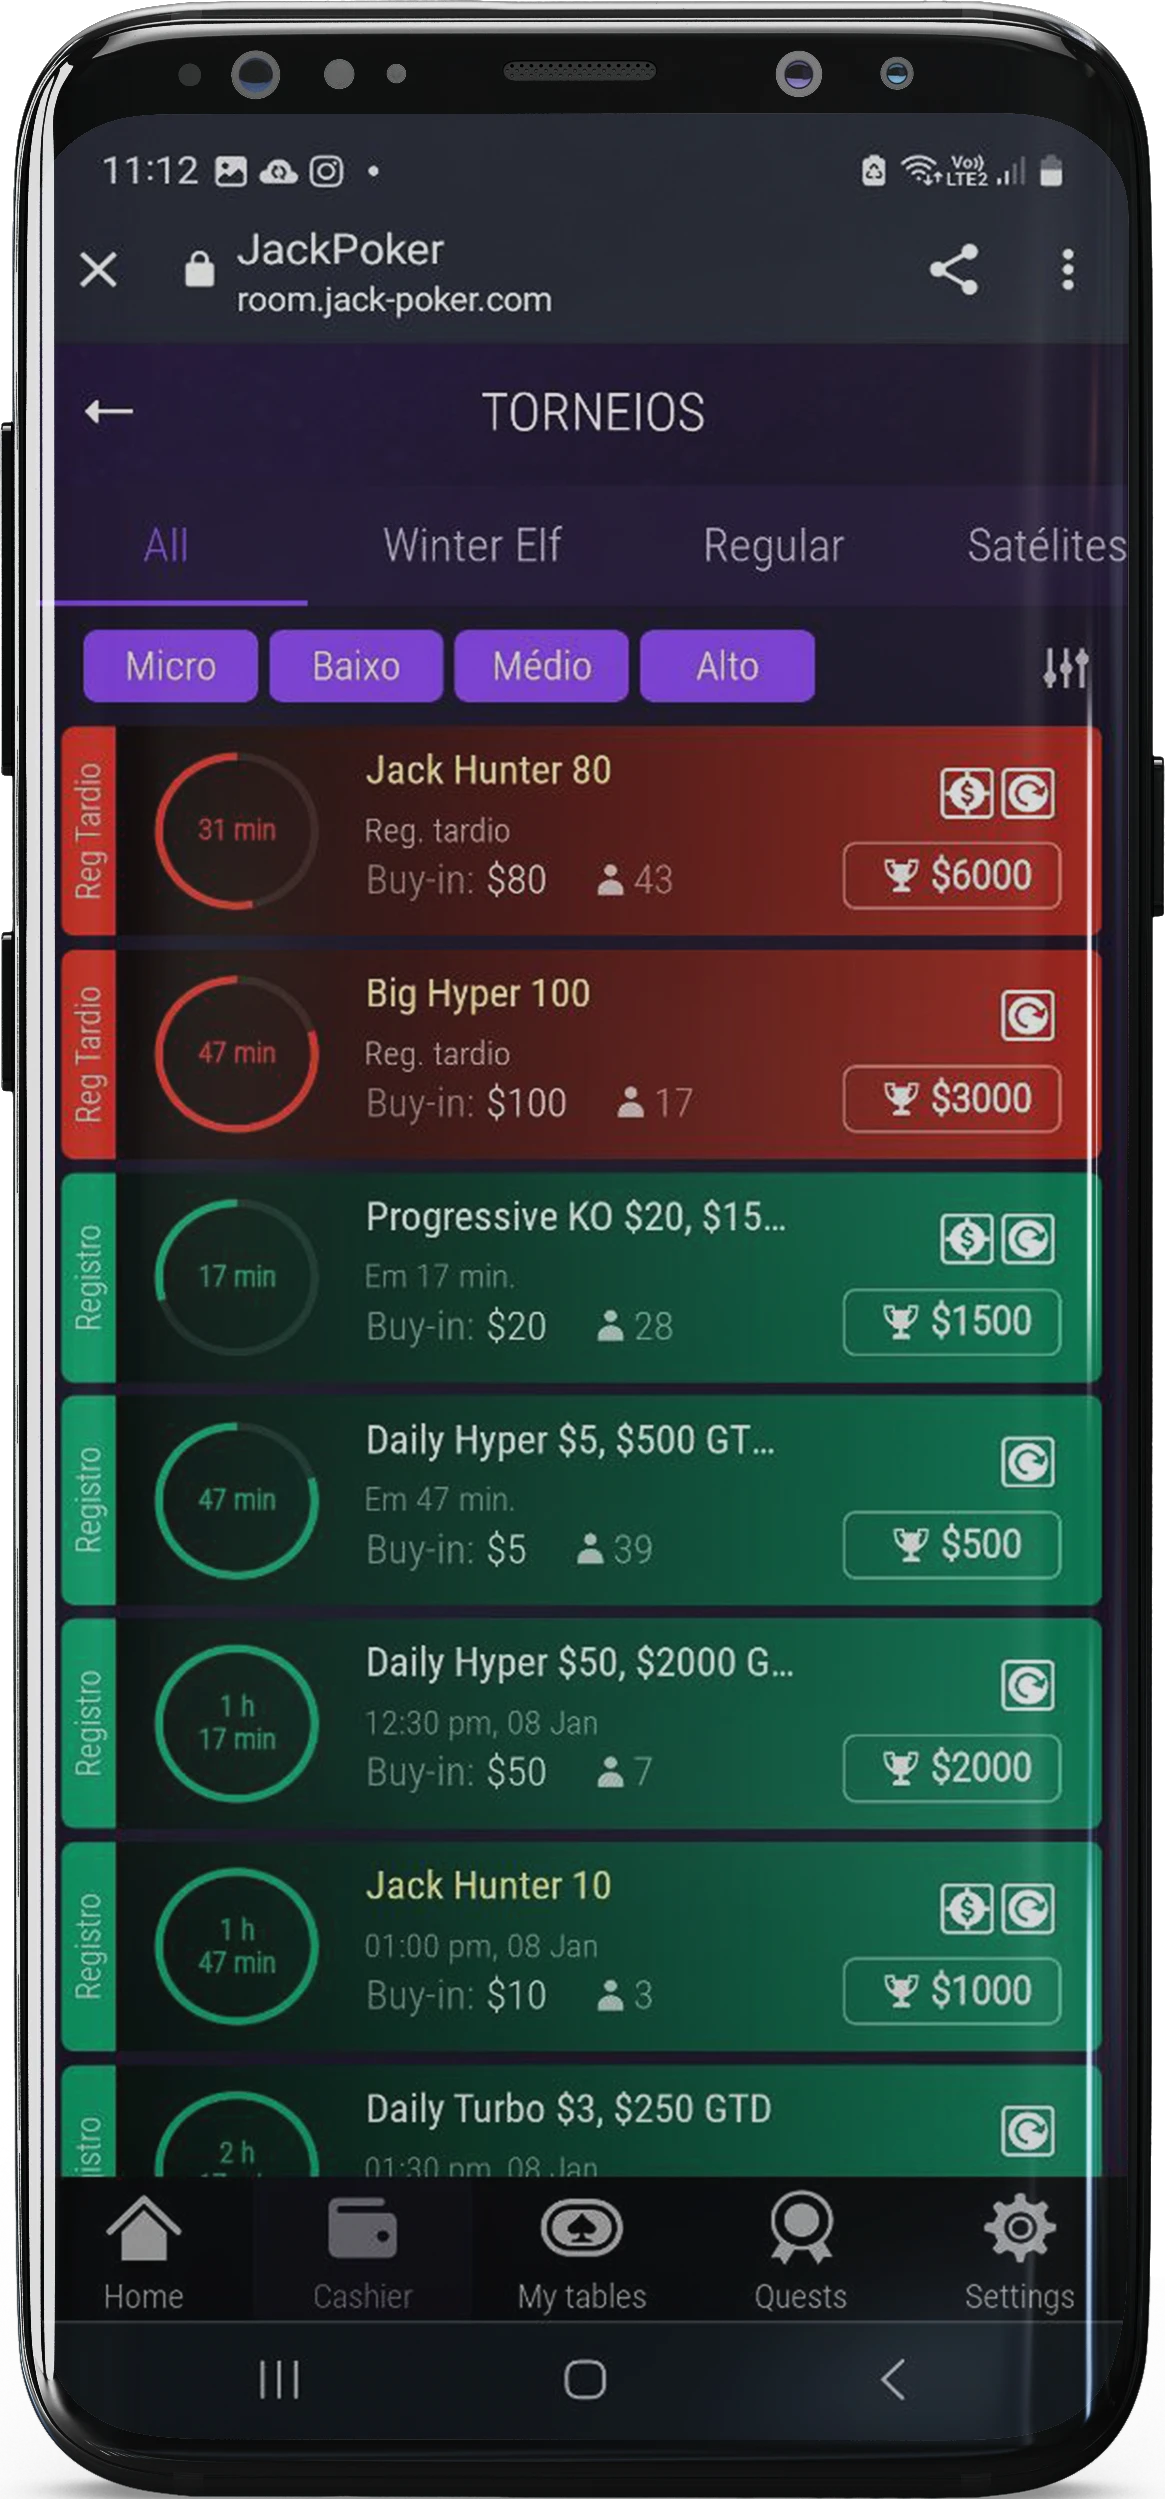 Captura de tela da página de torneios no aplicativo Jackpoker